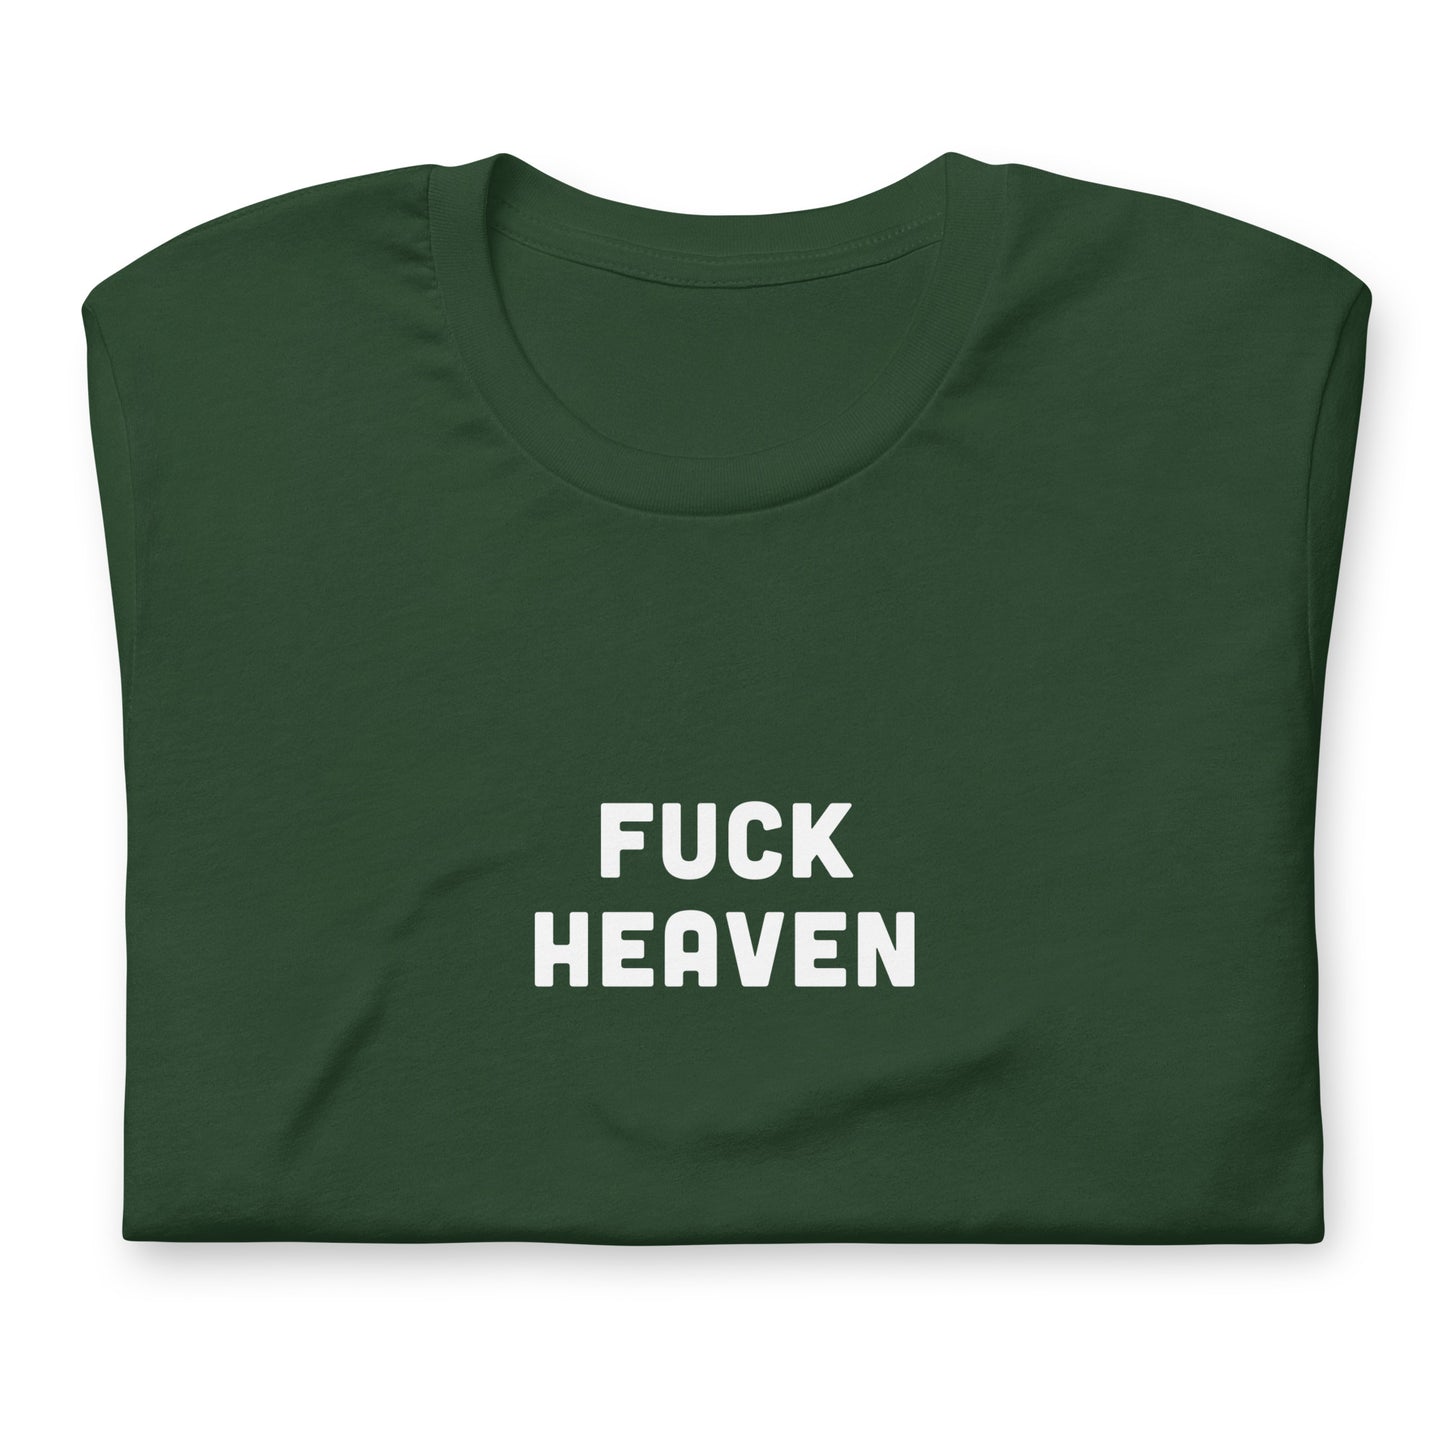 Fuck Heaven T-Shirt Size 2XL Color Black